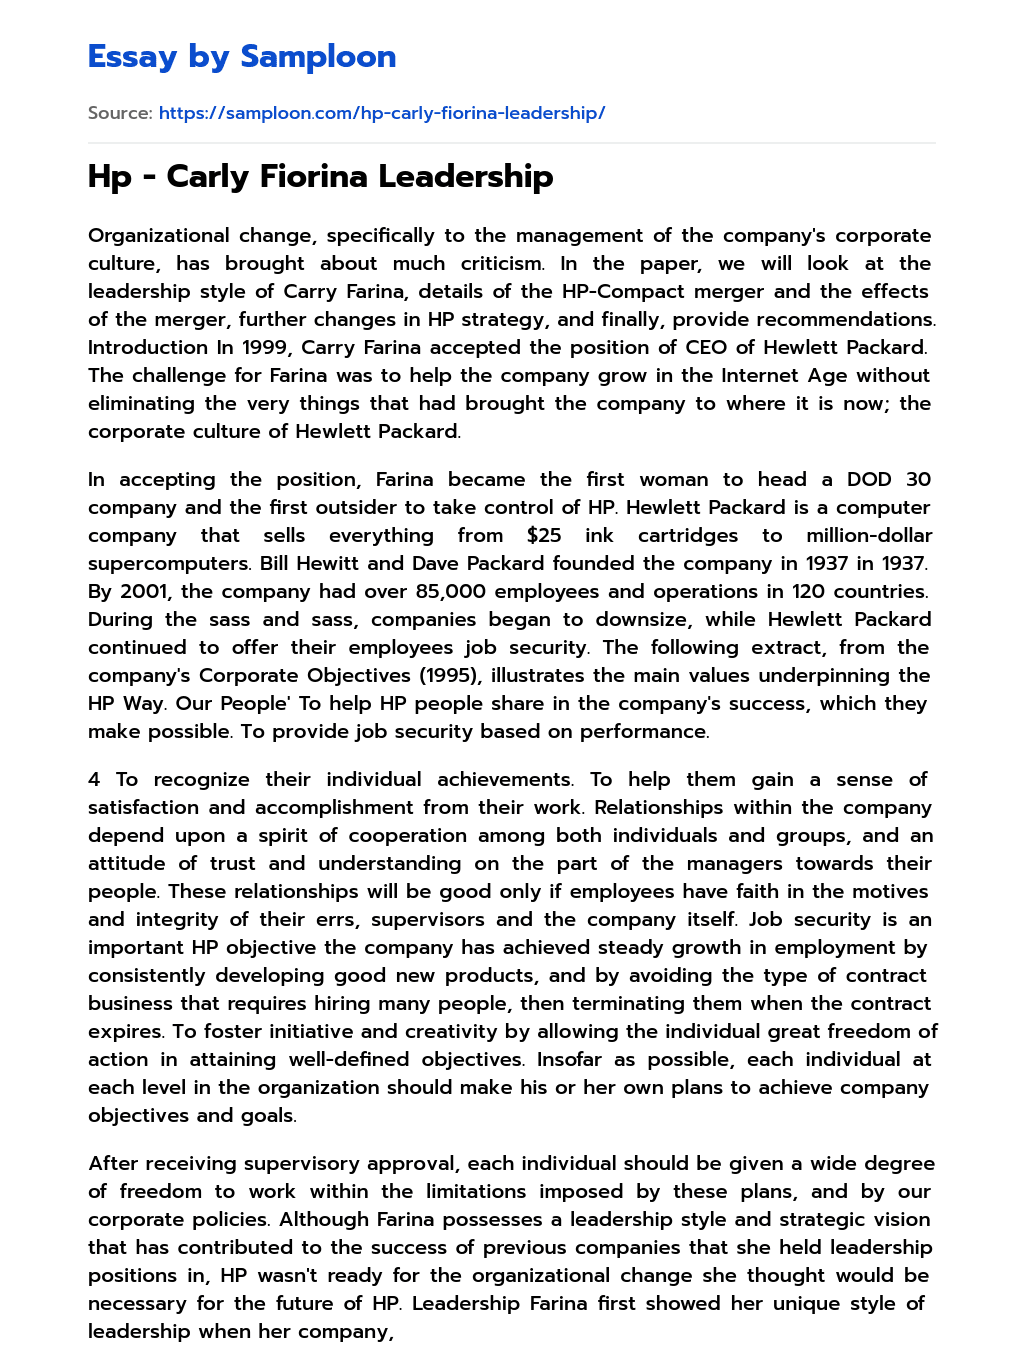 Hp – Carly Fiorina Leadership essay